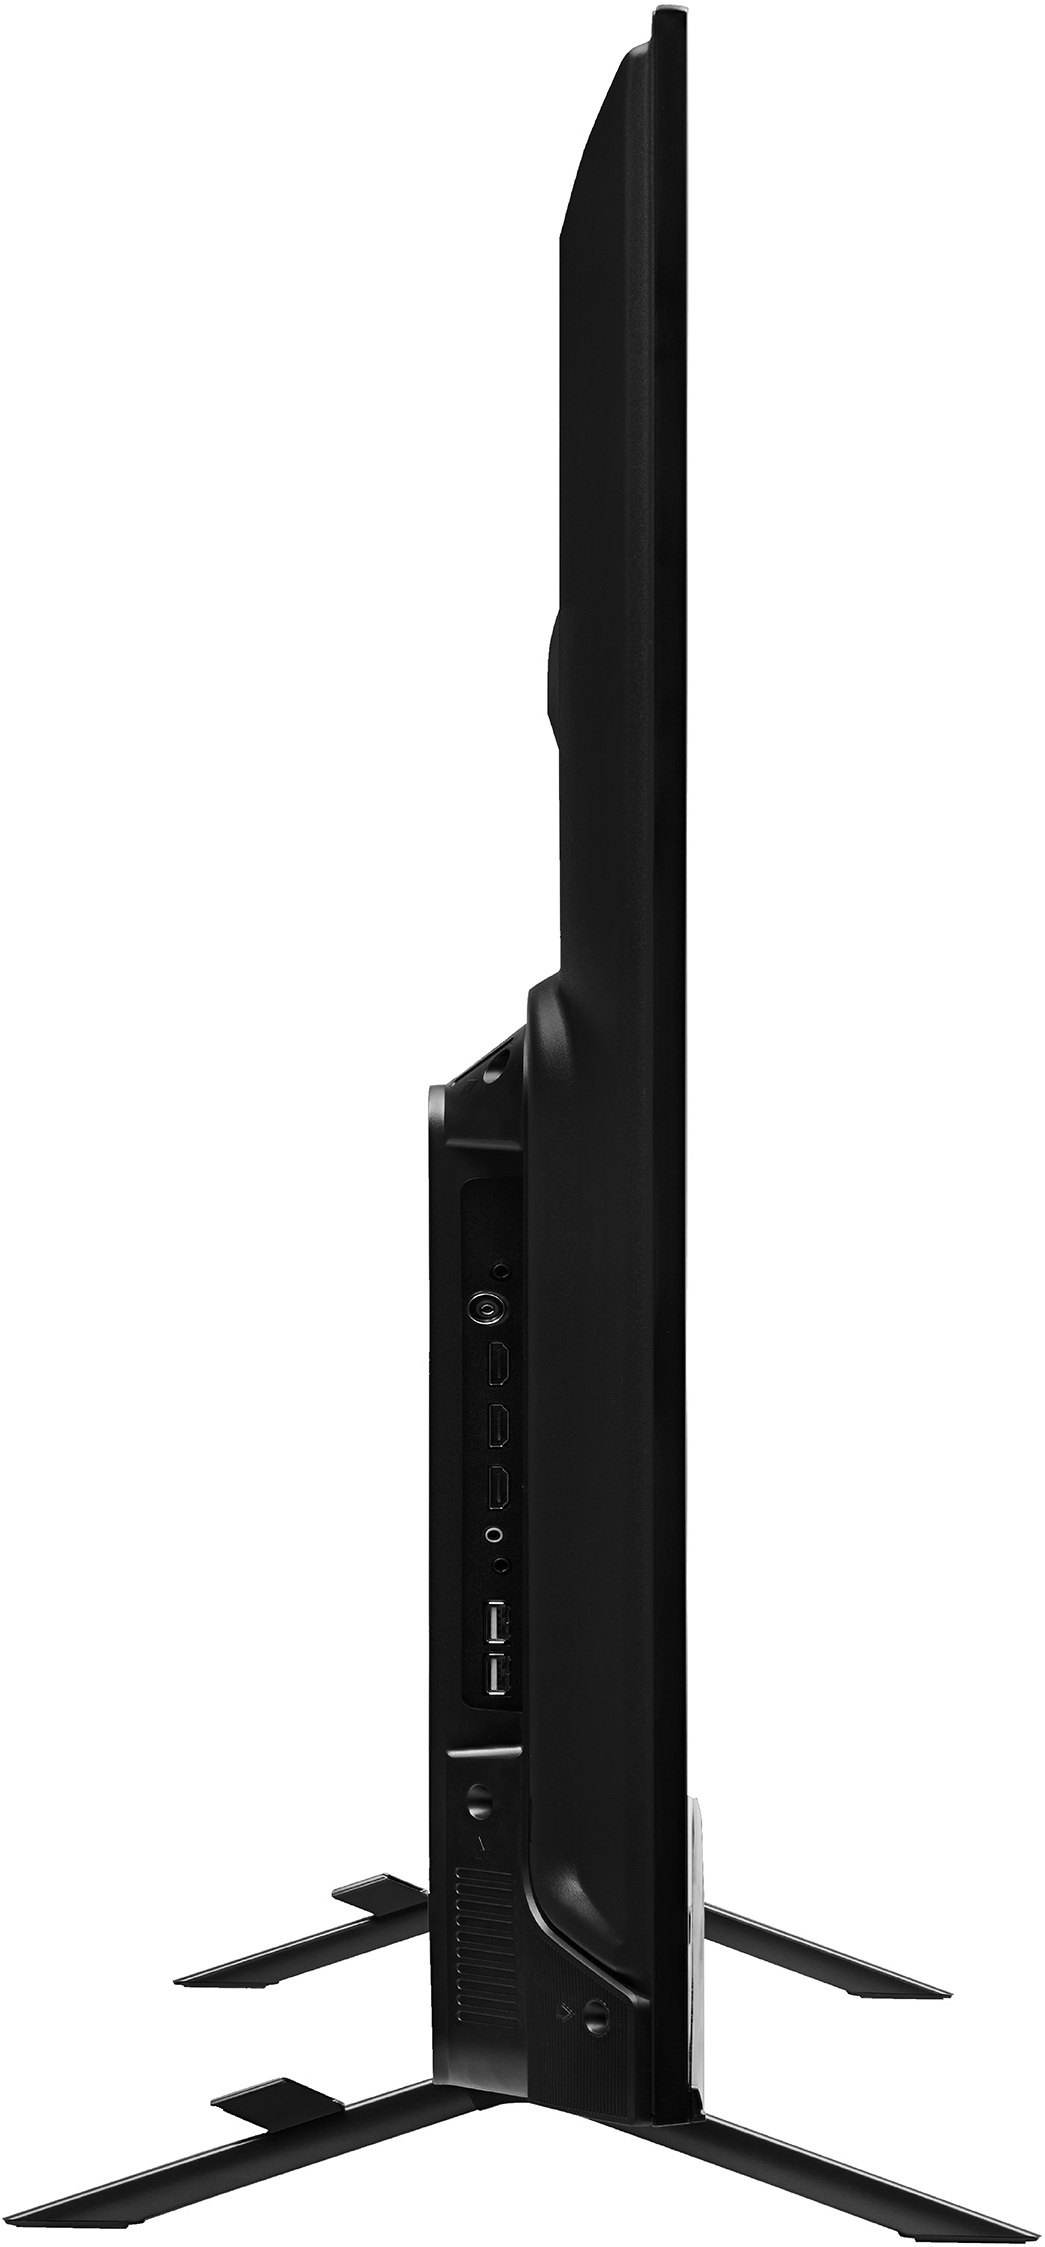 Vu  GloLED (65 inch) Ultra HD (4K) (65GloLED-3 Yrs)